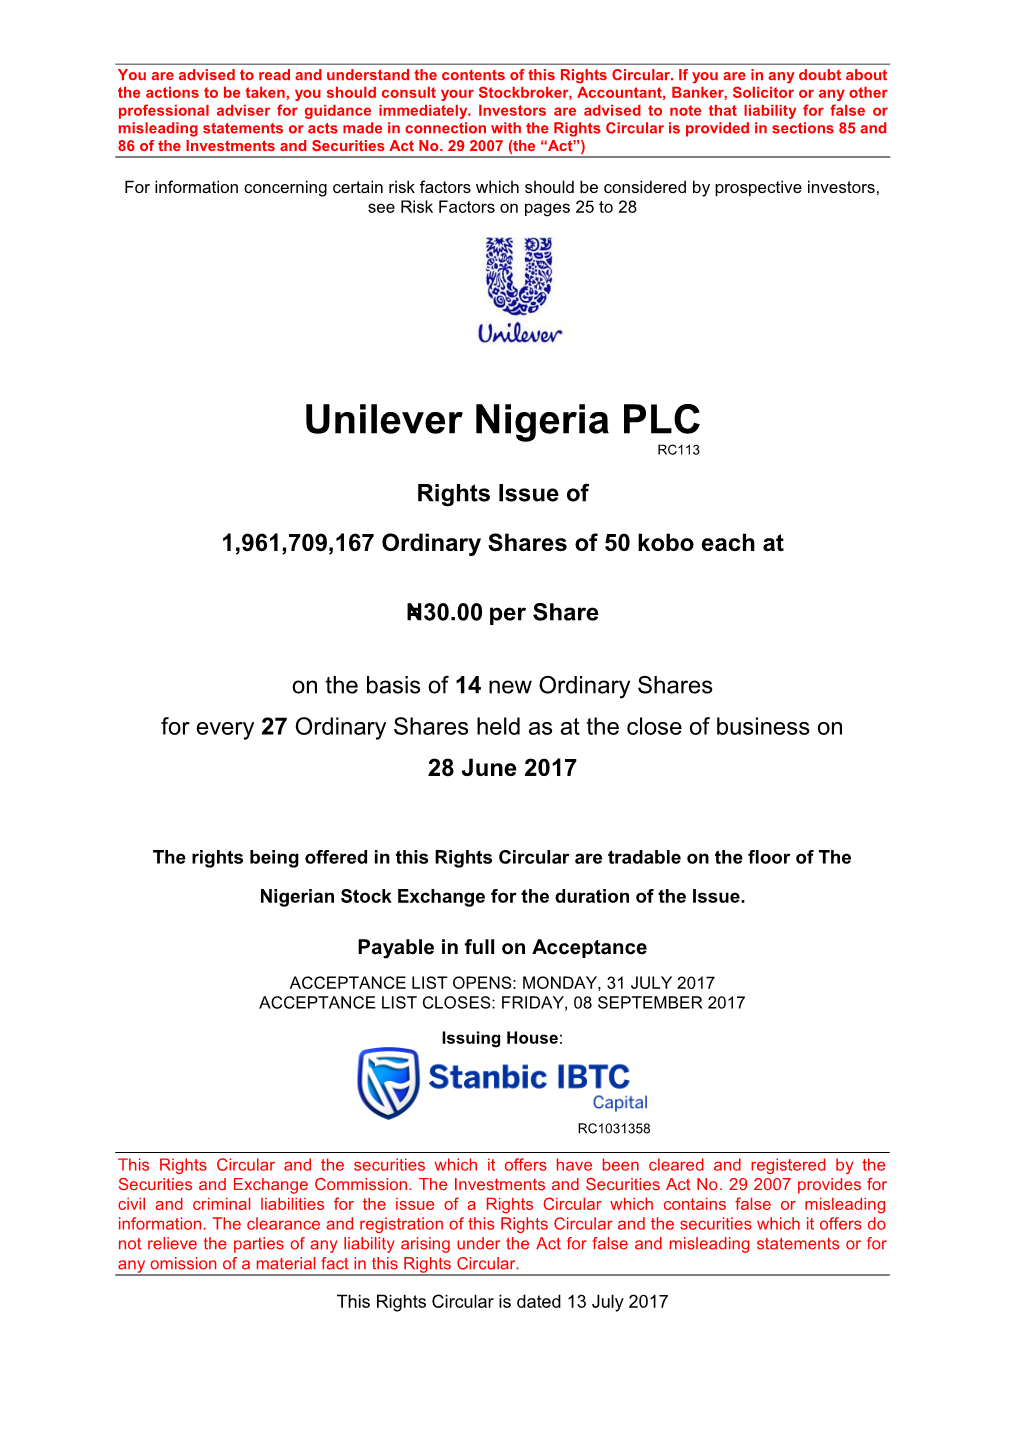 Unilever Nigeria PLC RC113